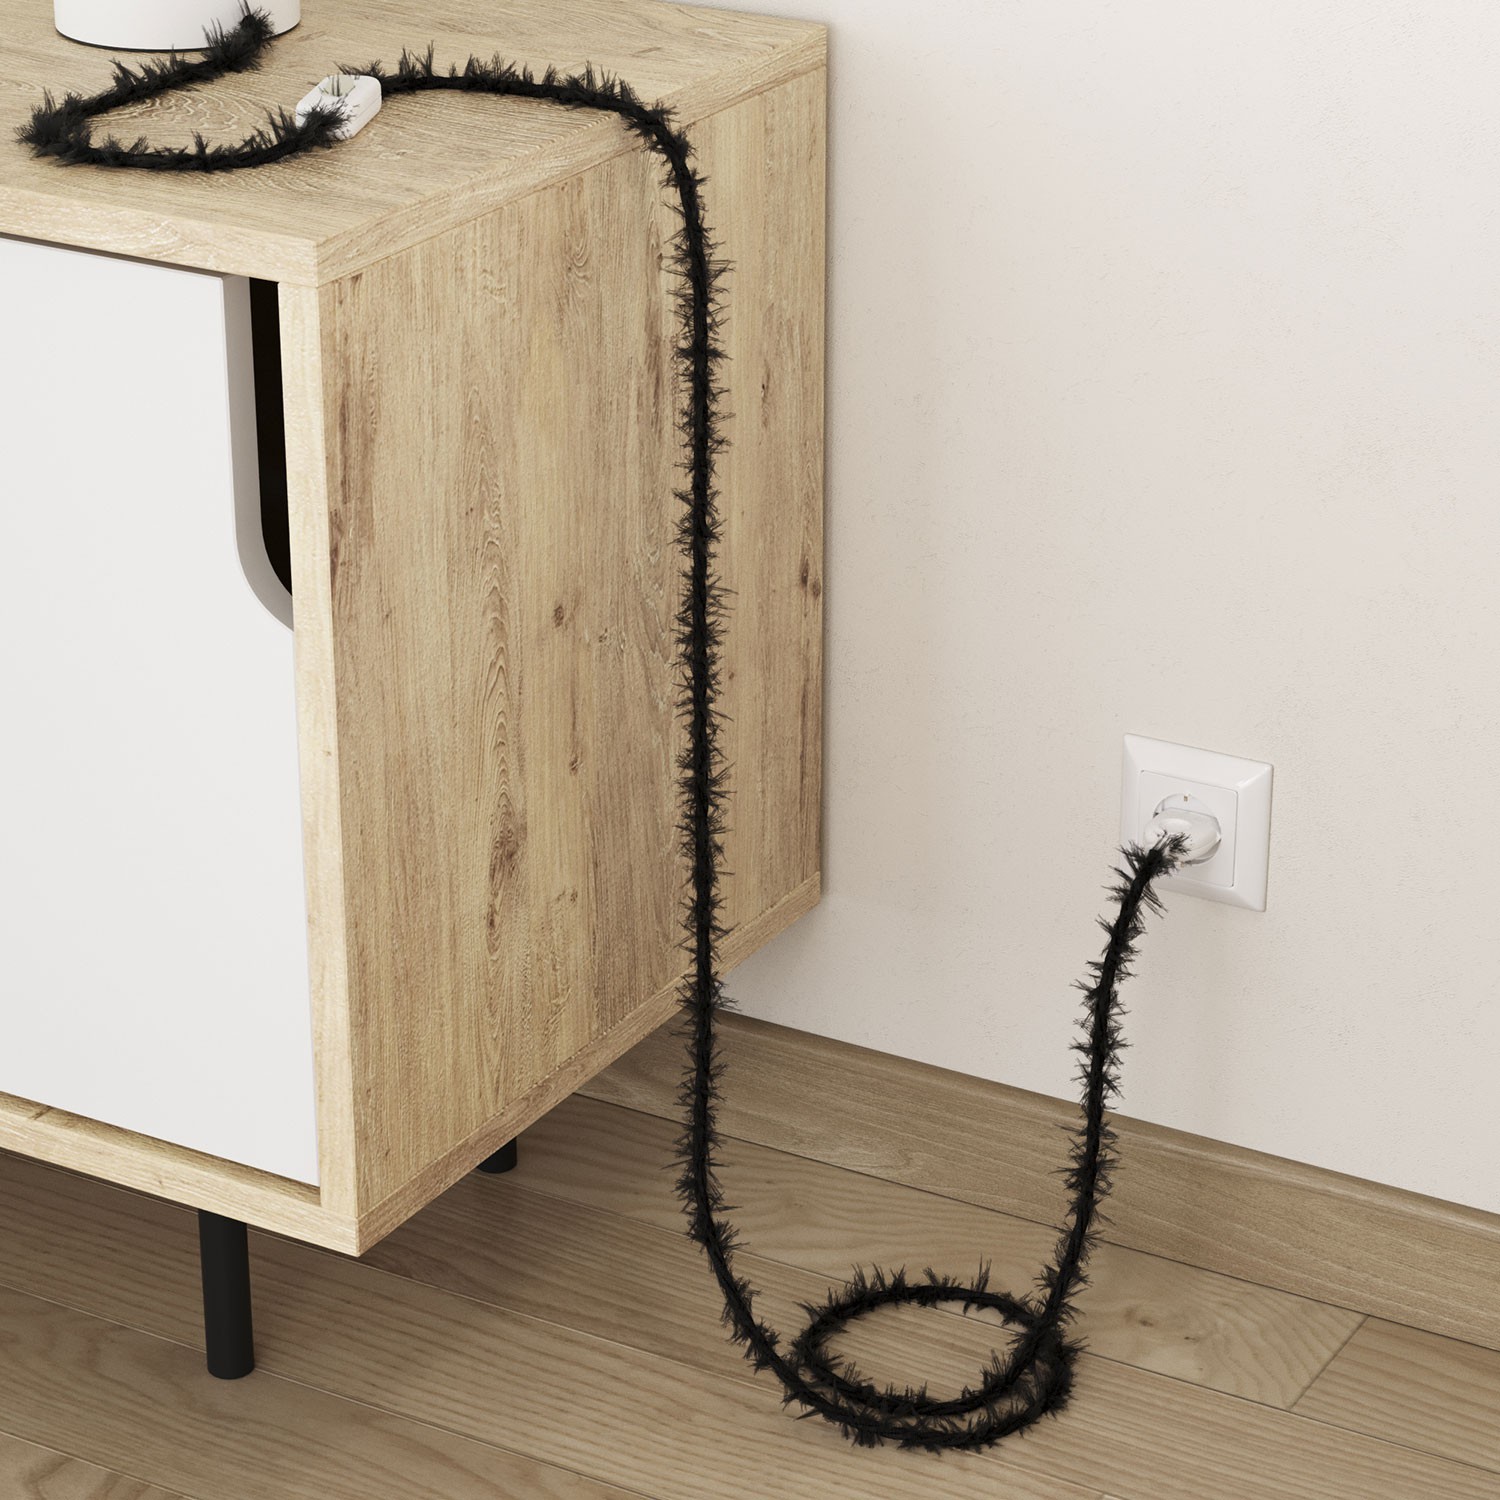 Burlesque stočený textilný elektrický kábel s chlpatým efektom TP04 čierny